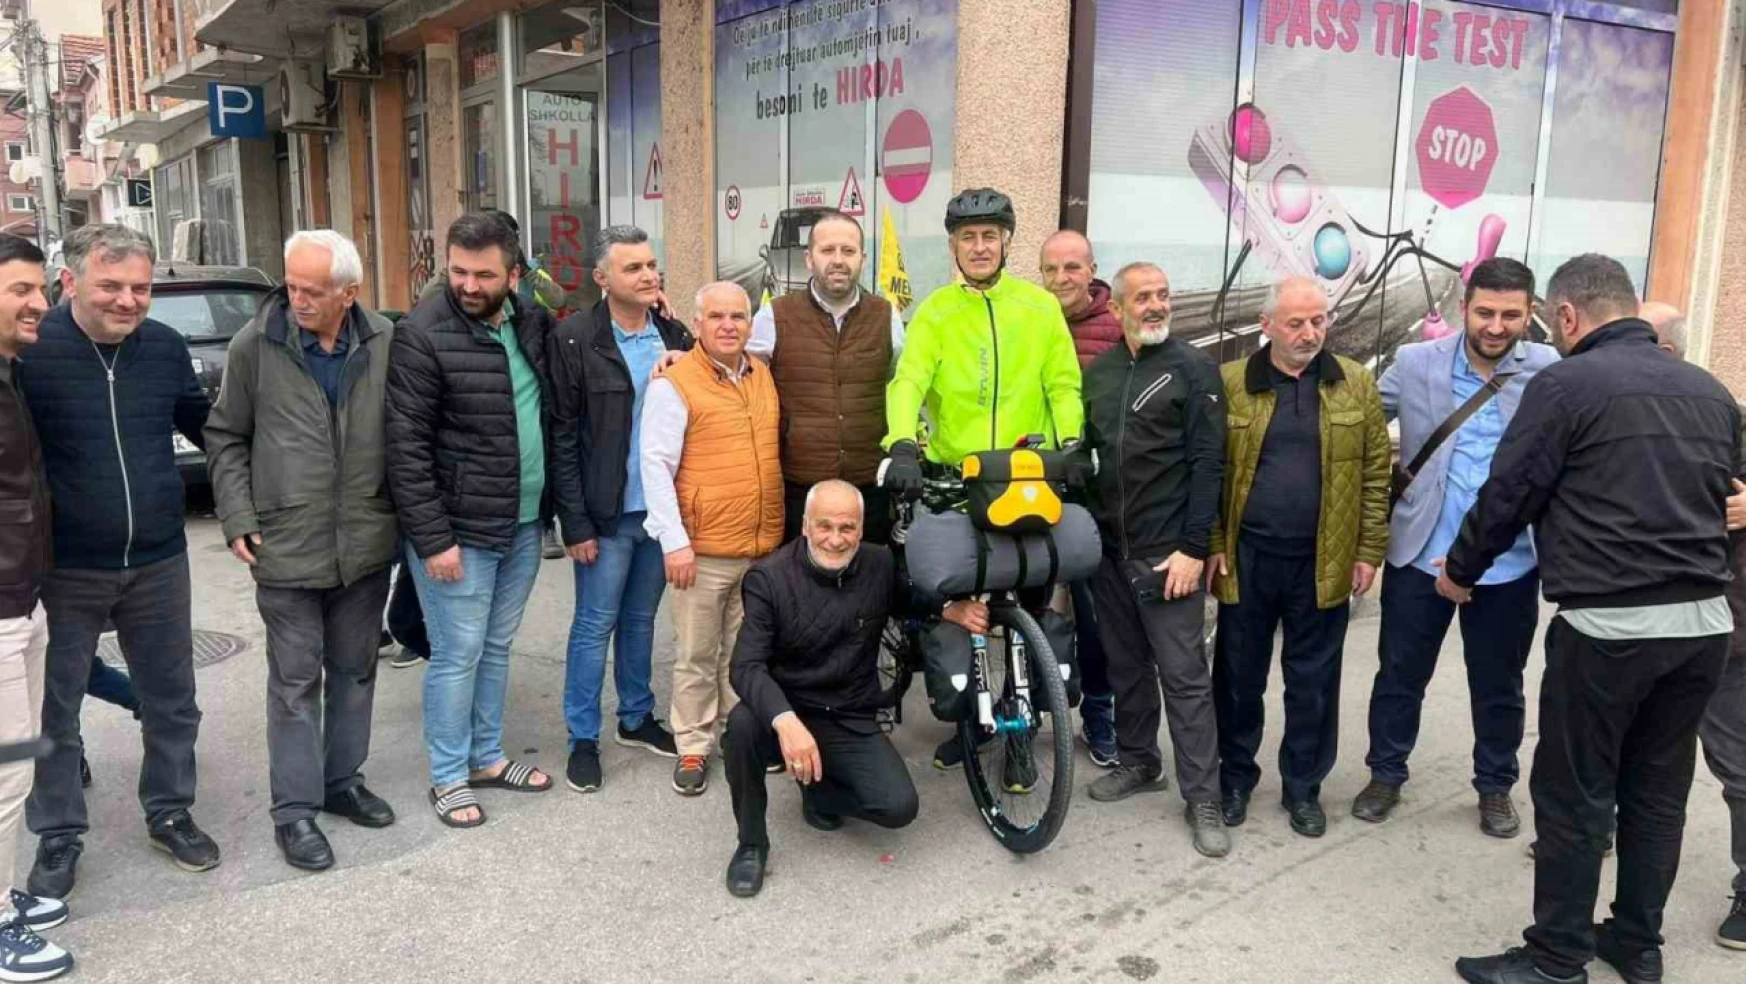 Hac vazifesini yerine getirmek için Kuzey Makedonya'dan bisikletle yola çıktılar